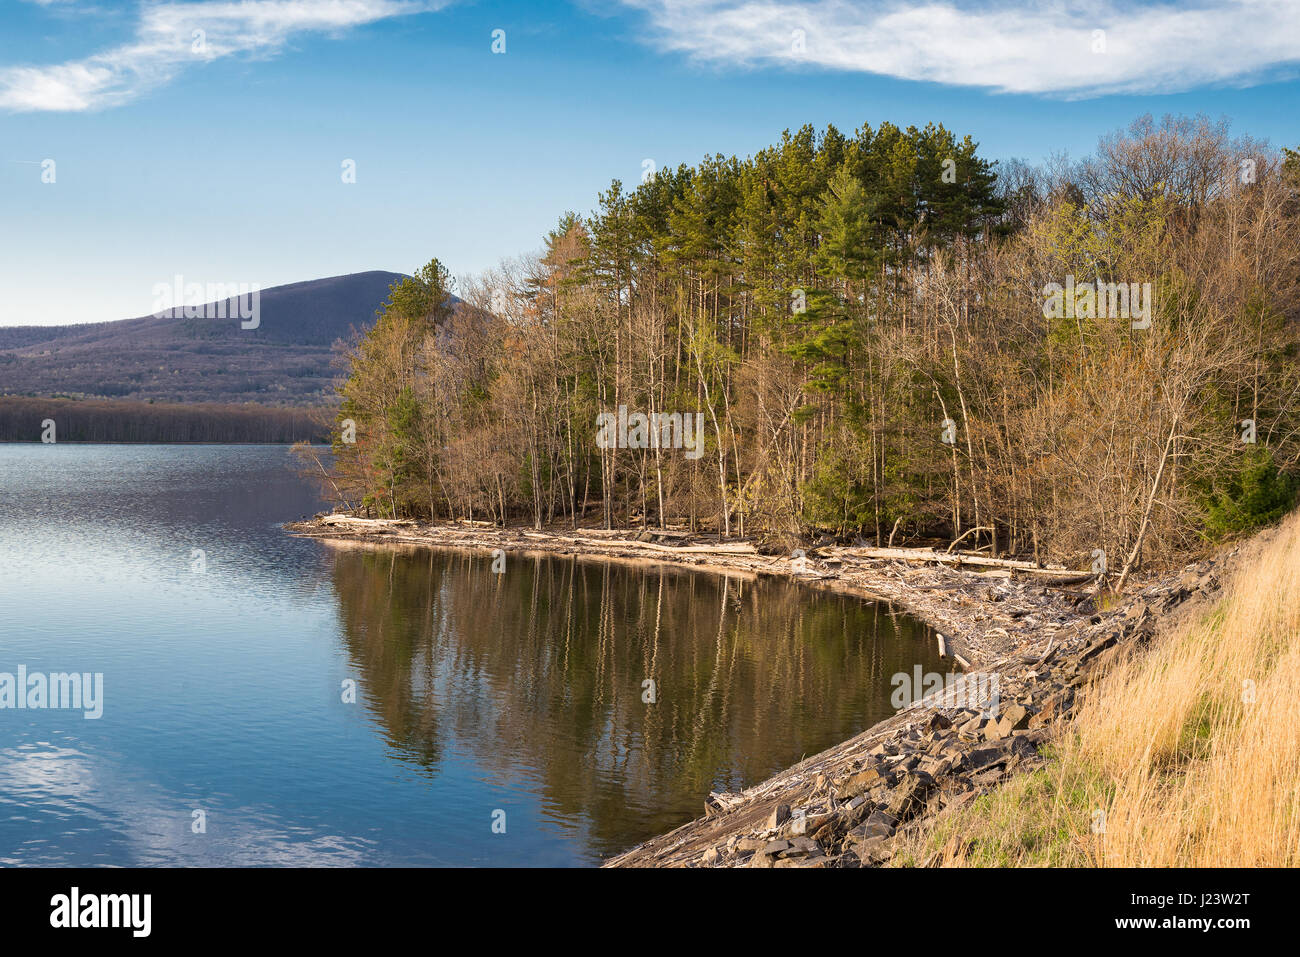 Rivage du réservoir Ashokan approvisionne à l'heure d'or dans les monts Catskill du Hudson Valley of new york,une partie de l'approvisionnement en eau de la ville de New York. Banque D'Images